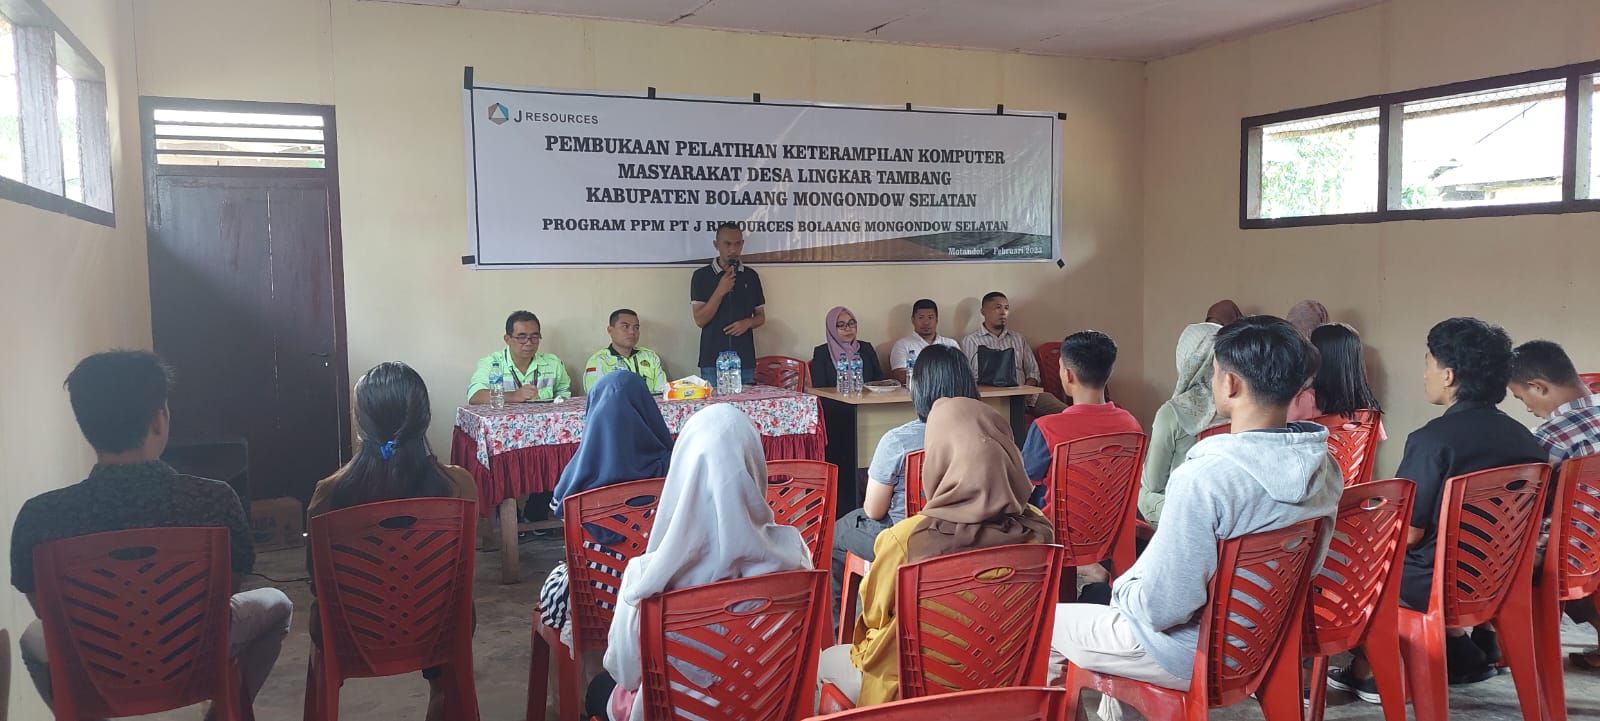 Pembukaan Pelatihan Komputer Bagi Masyarakat Lingkar Tambang di Bolsel yang Dilaksanakan oleh PT. JRBM